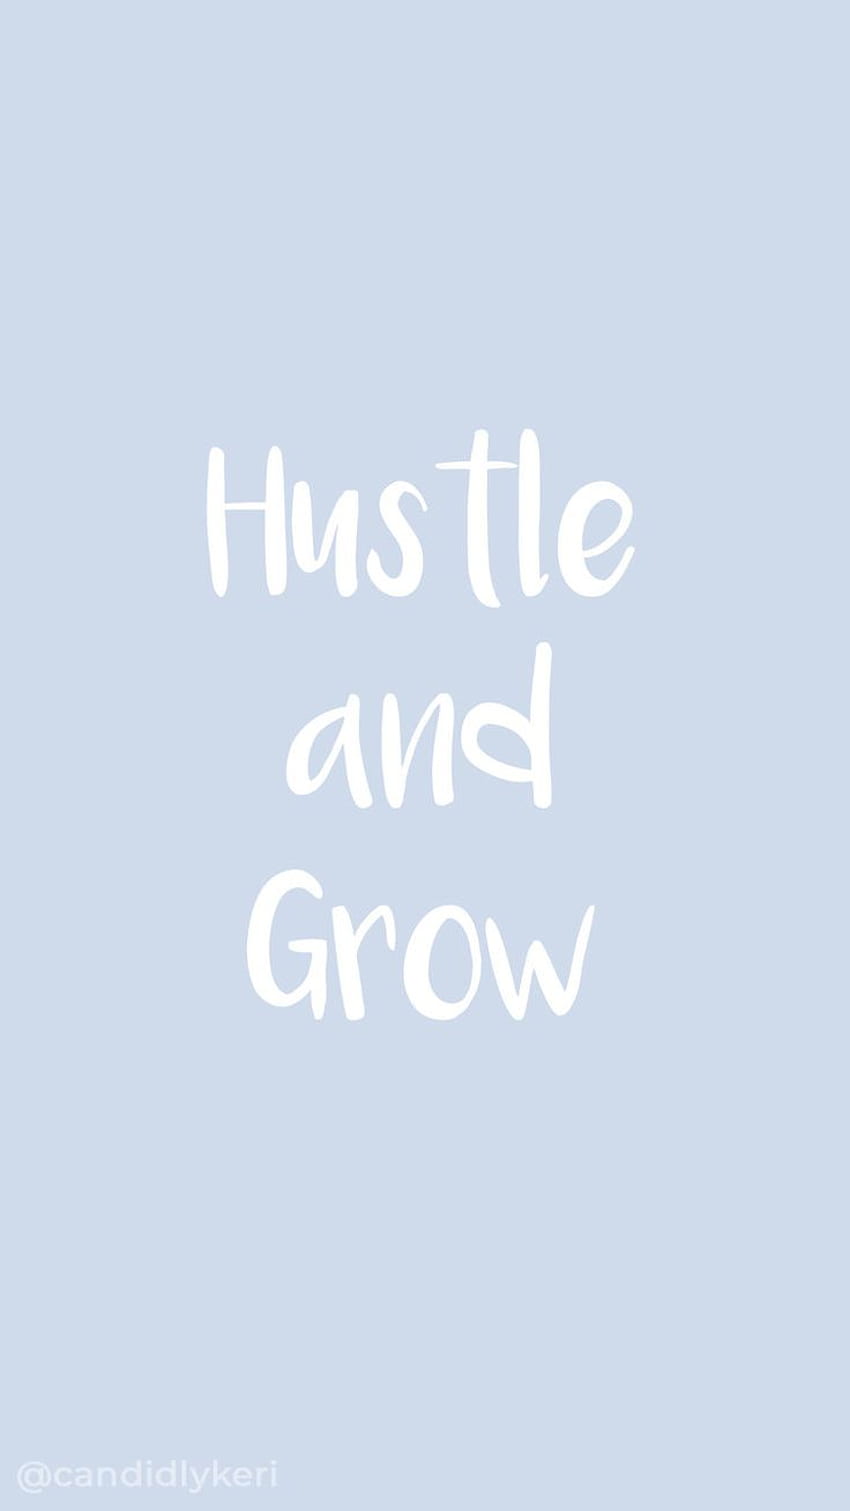 Hustle And Grow син ръкописен шрифт цитат вдъхновяващ фон можете за на. Вдъхновяващ фон, сини цитати, цитати на шрифтове, Girly Hustle HD тапет за телефон